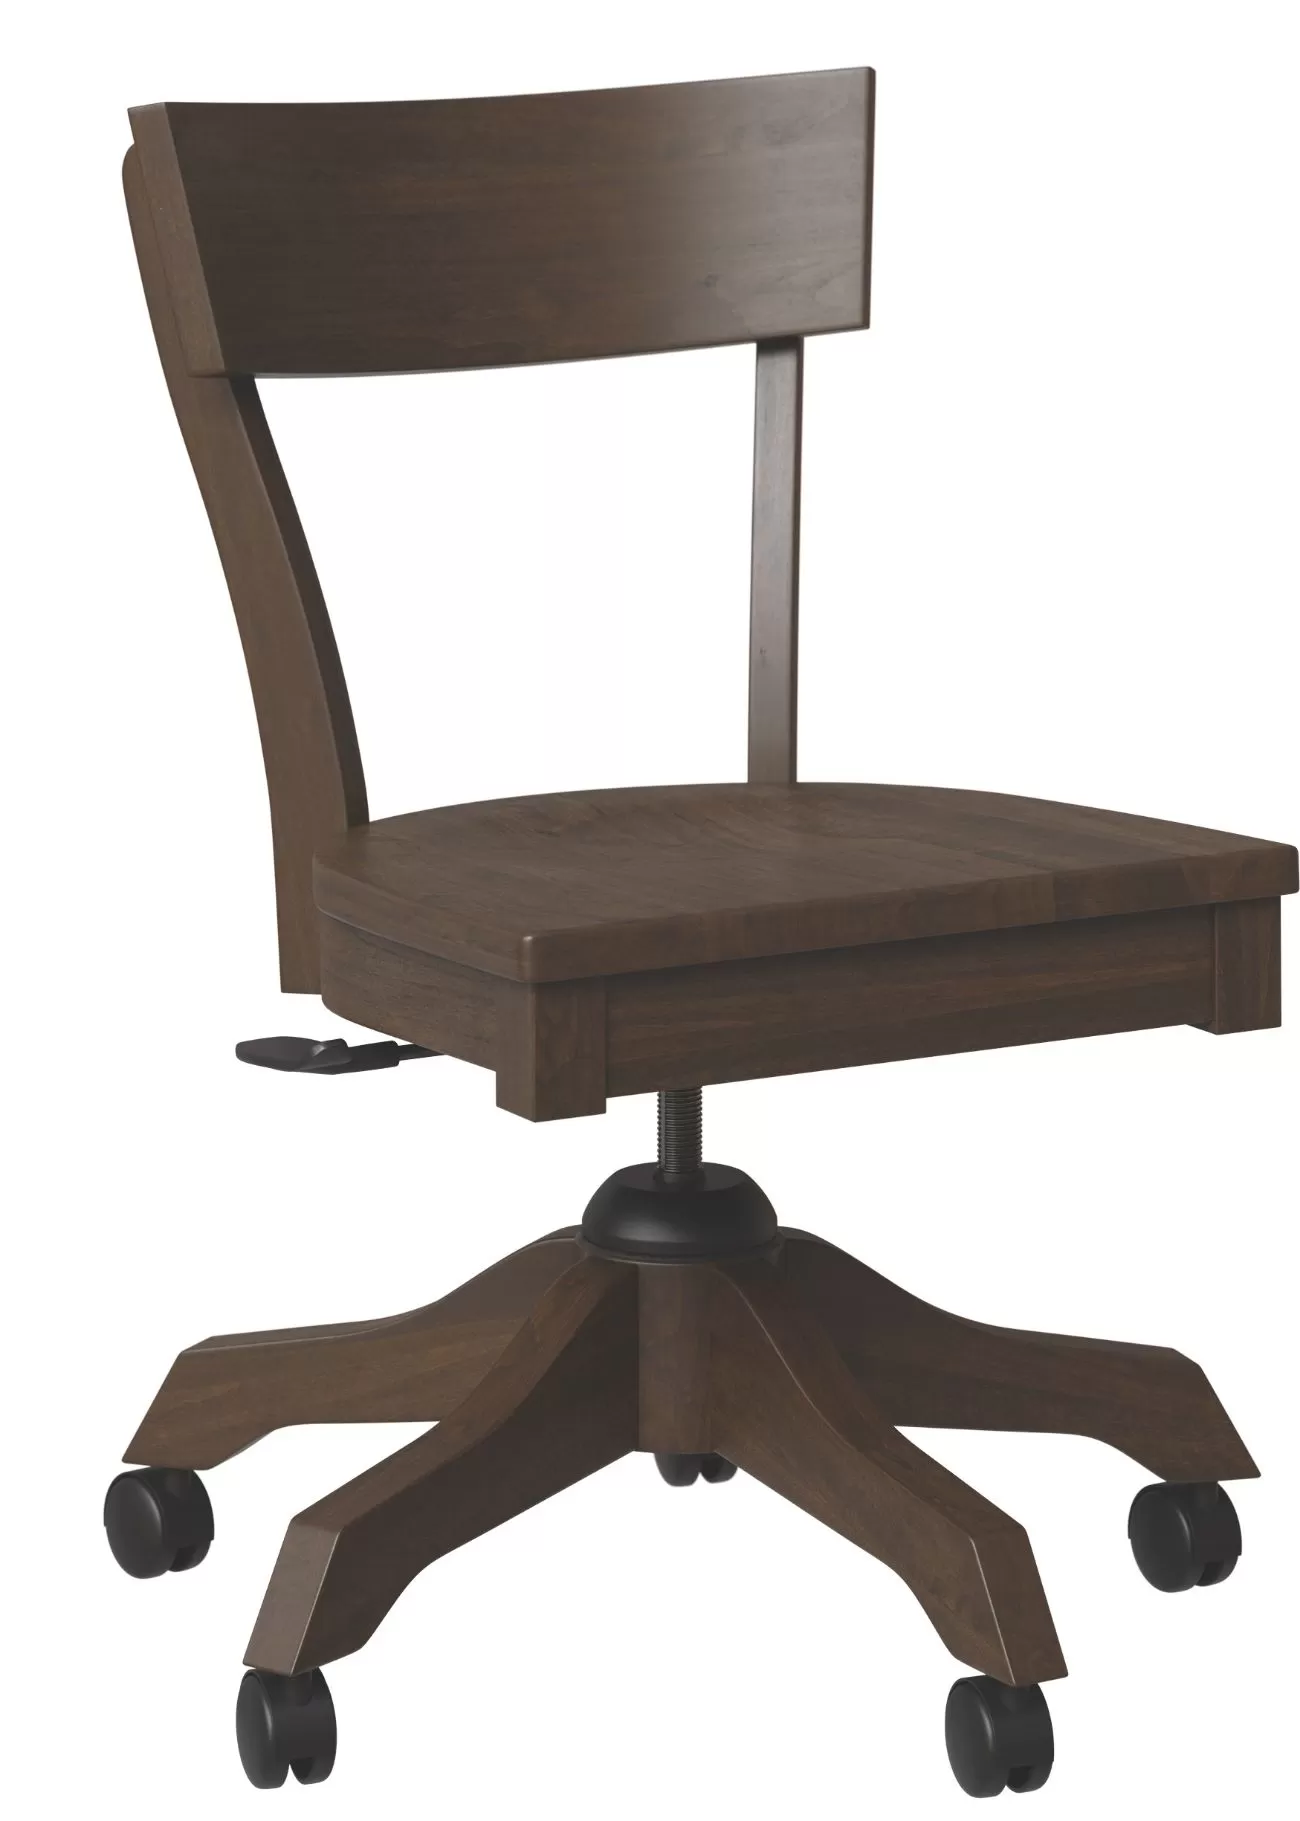 Greenville side desk chair